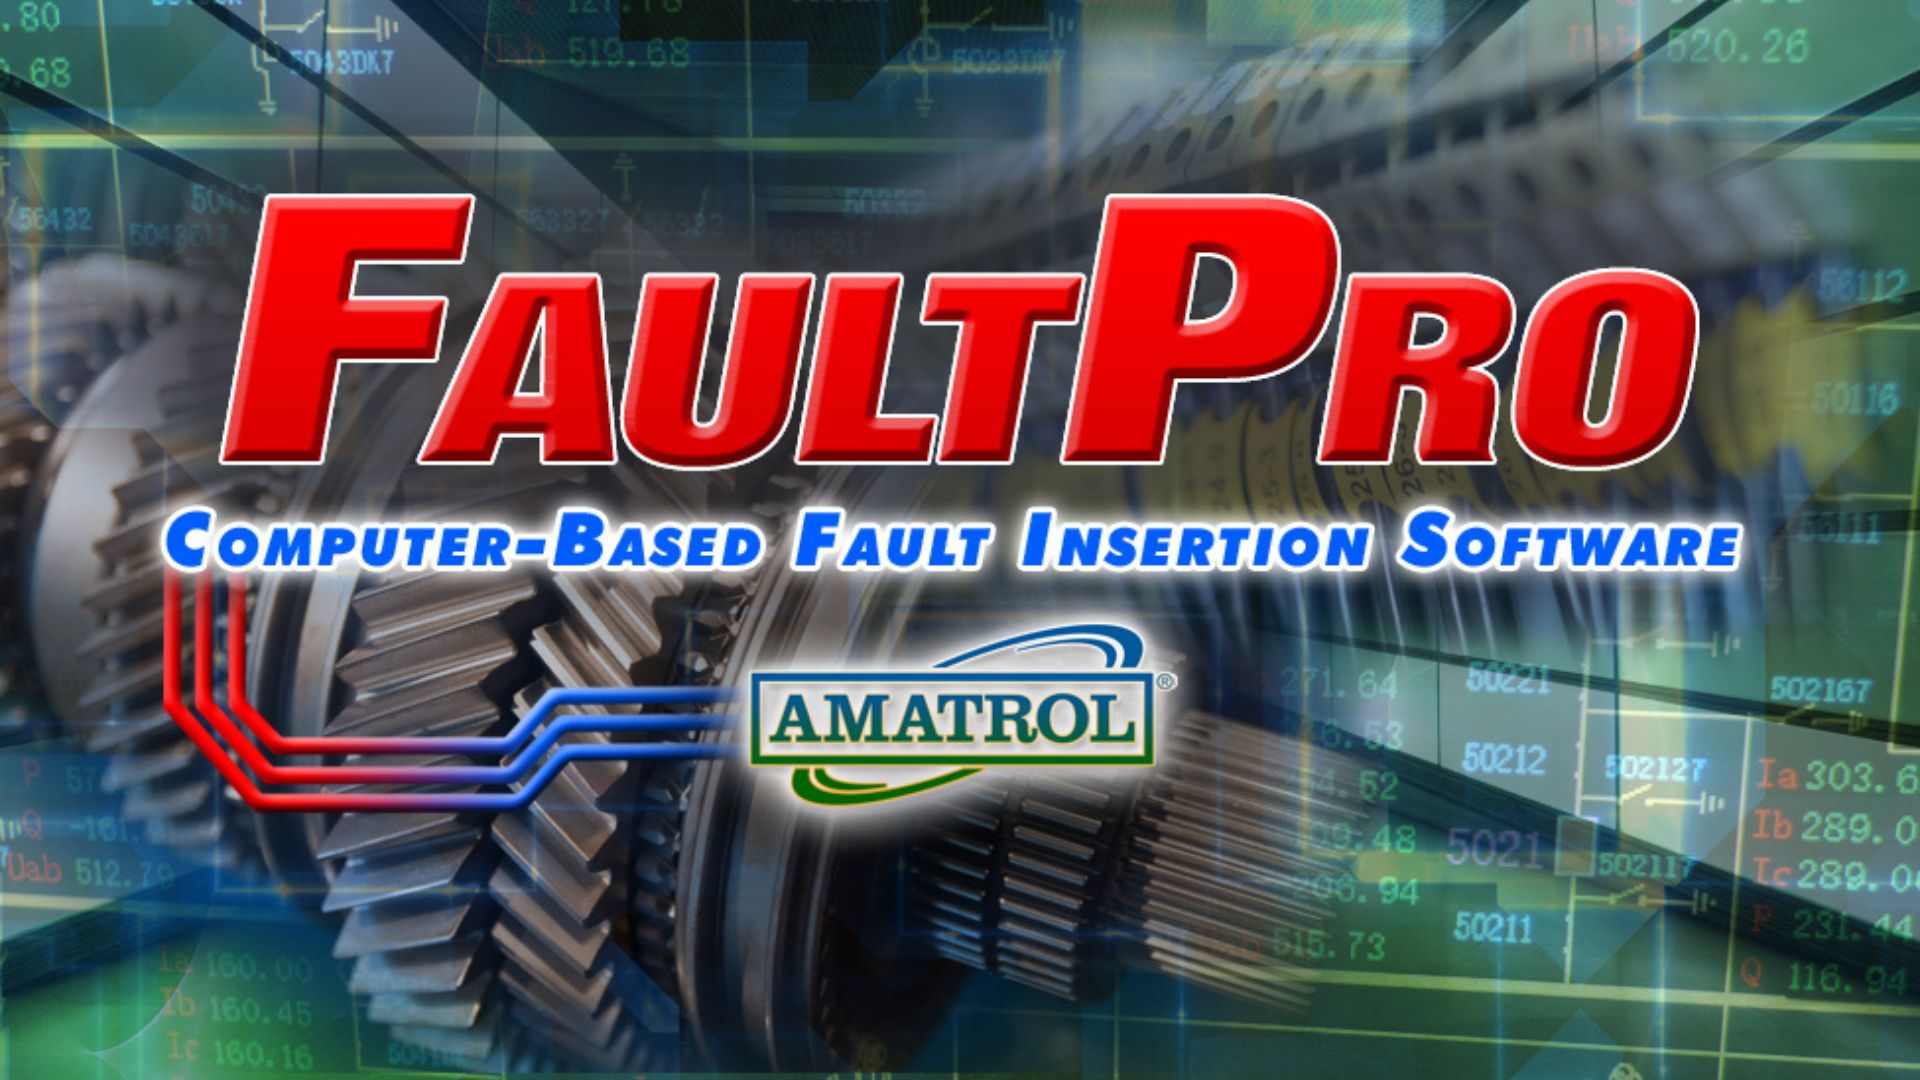 FaultPro Computer-Based Fault Insertion Software